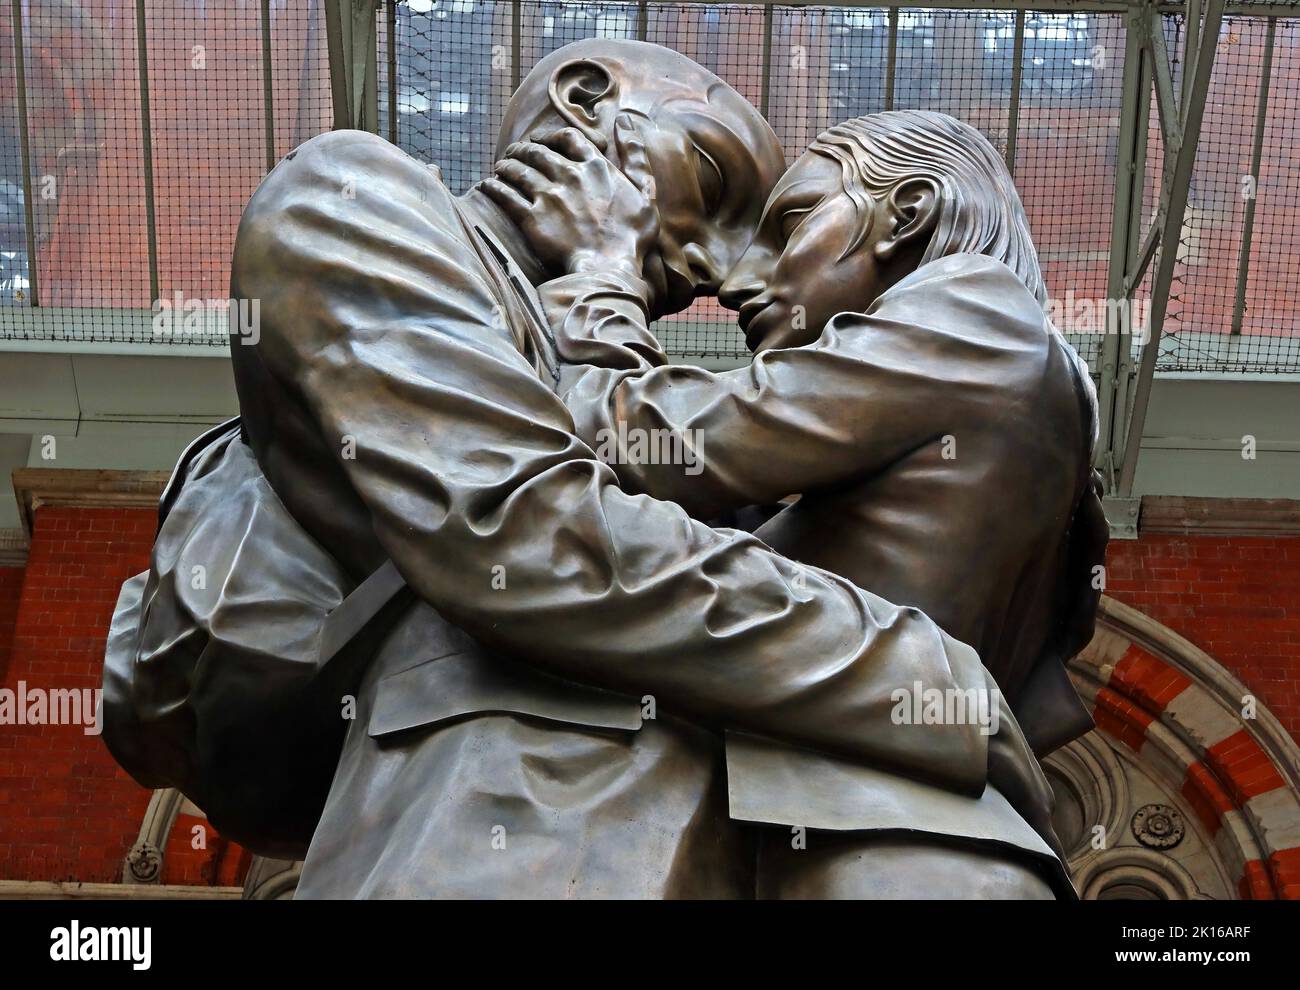 The Meeting place, une statue de l'artiste britannique Paul Day, dans la Grand Terrace, gare internationale de St Pancras, Londres, Angleterre, Royaume-Uni, N1C 4QP Banque D'Images